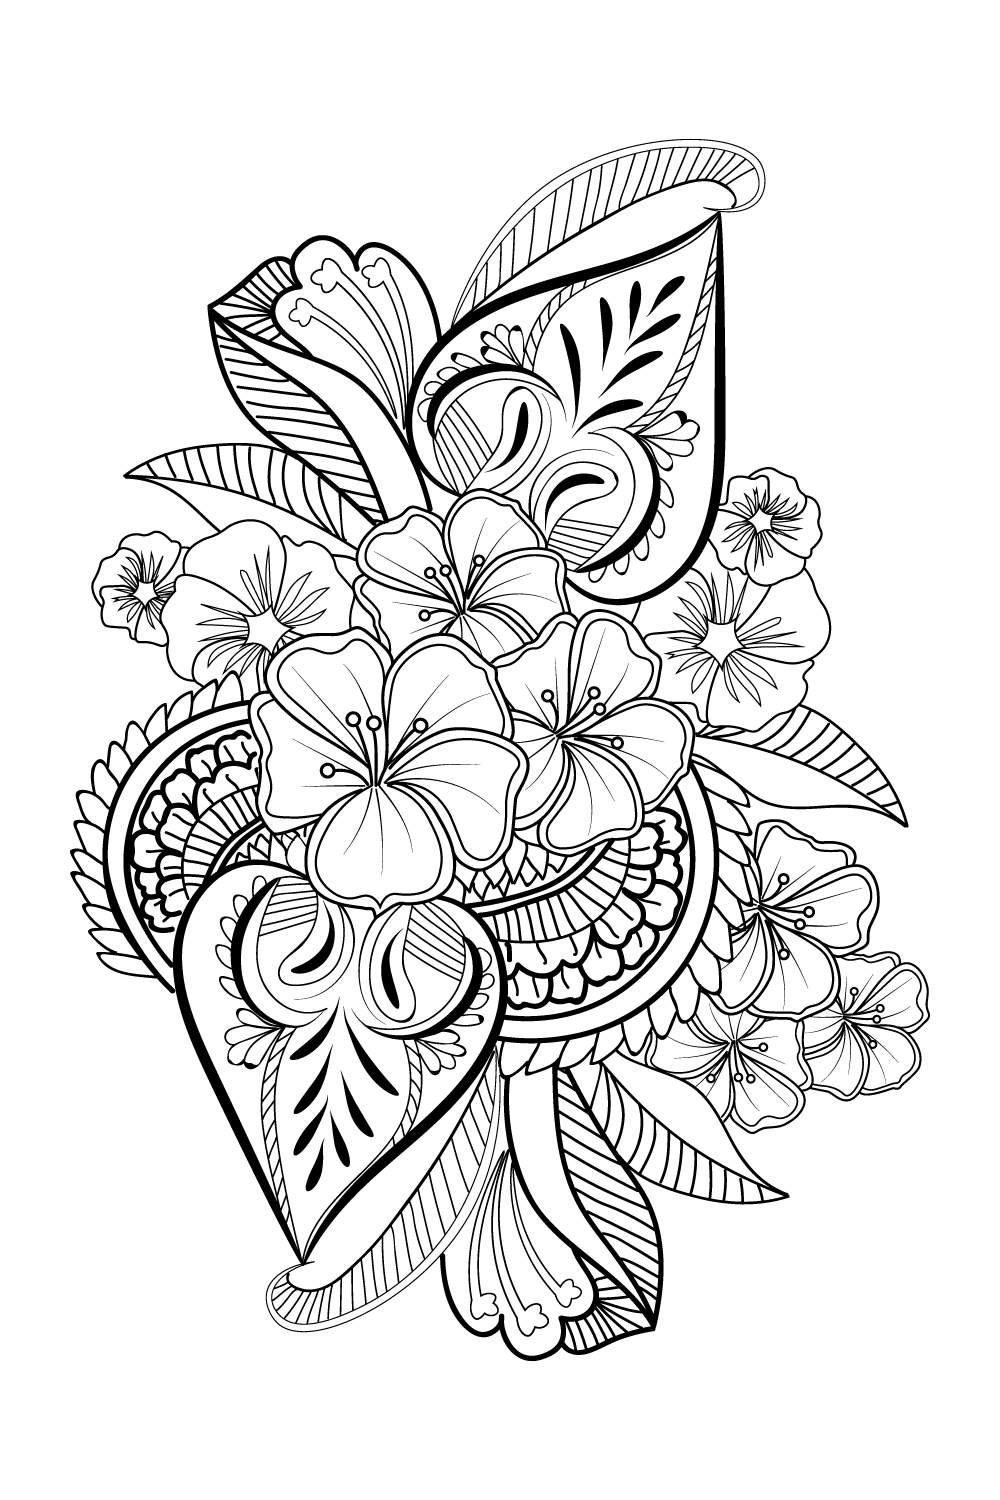 Pin by Wolfgang Janßen on Mandelas | Graphic design tattoos, Half sleeve  tattoo… | Half sleeve tattoos drawings, Half sleeve tattoo stencils,  Graphic design tattoos